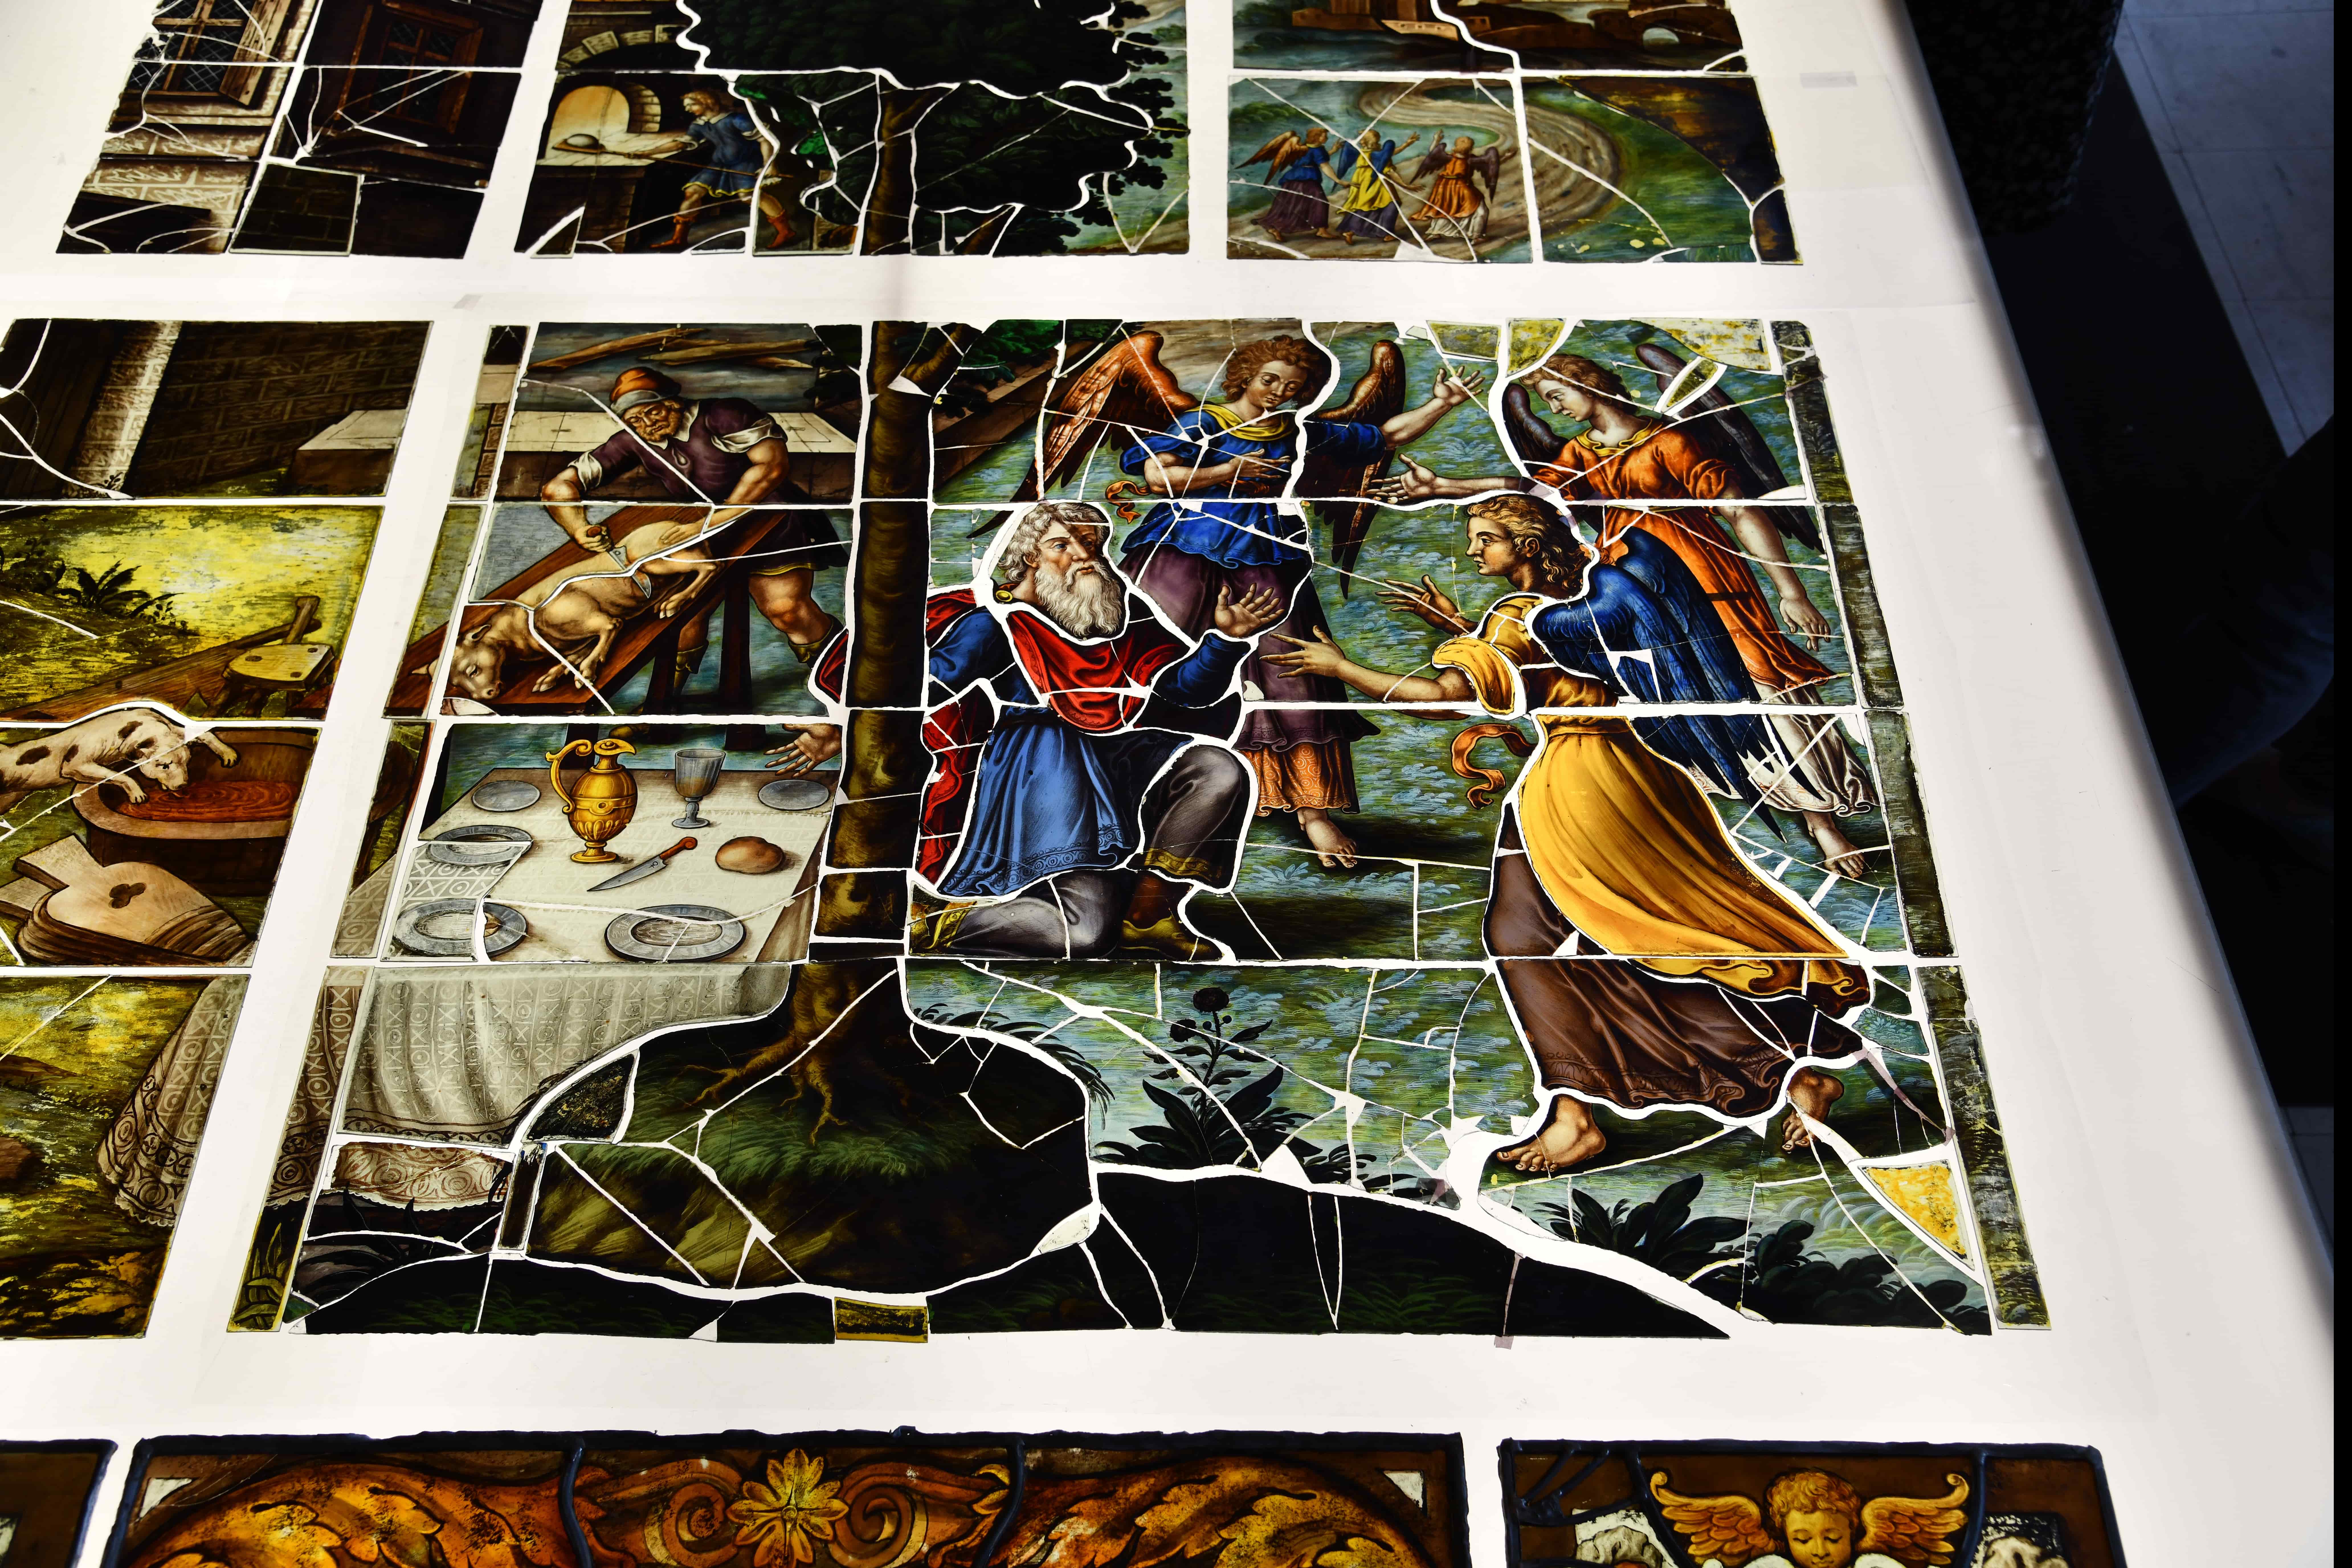 À Saint-Etienne-du-Mont, restauration de chefs-d’œuvre de l’art du vitrail au XVIIe siècle